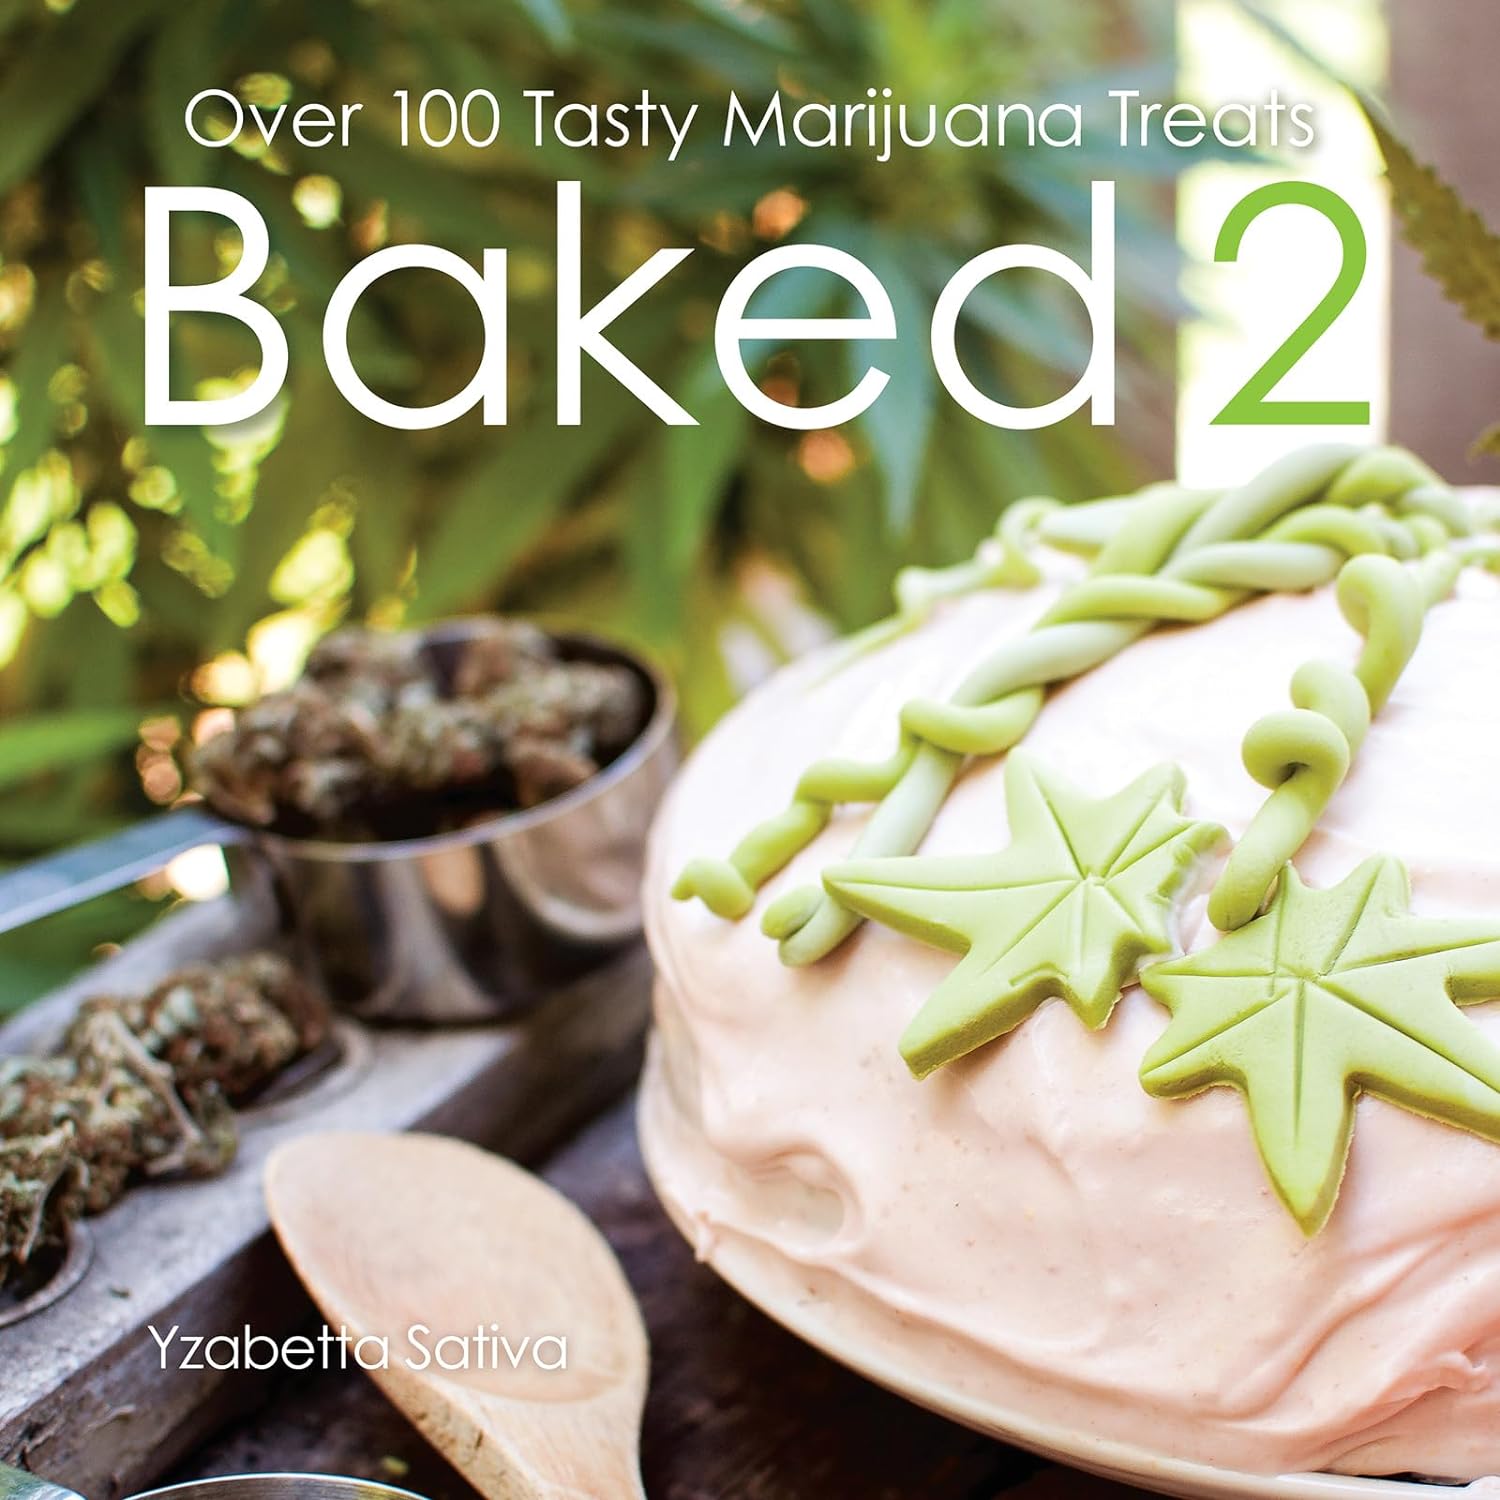 Book - Baked 2: Over 80 Tasty Marijuana Treats